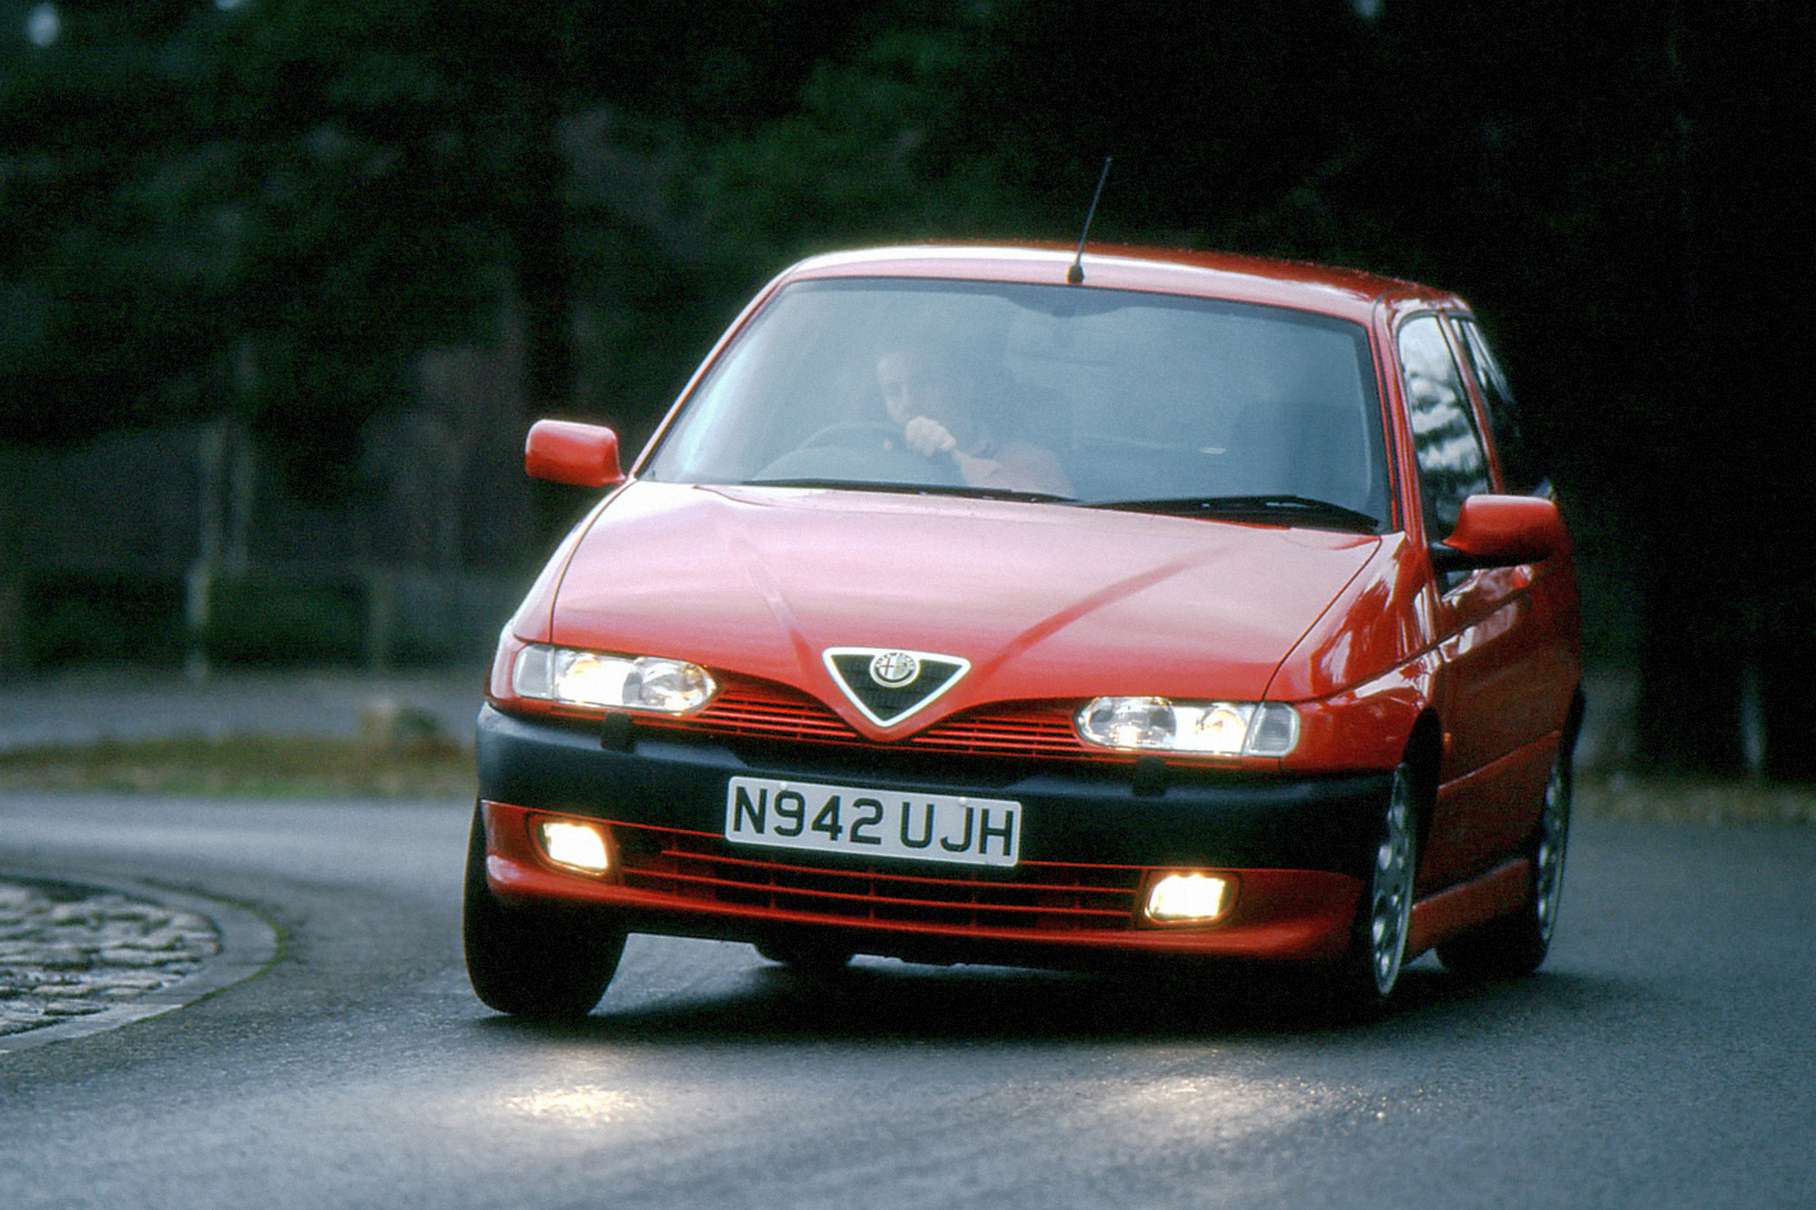 ###  Небольшой хэтчбек, вышедший в 1994 году, был третьей по счёту моделью Alfa Romeo, полностью разработанной после присоединения марки к концерну Fiat. Так что яркий дизайн Криса Бэнгла и Вальтера да Сильвы скрывал платформу хэтчбека Fiat Tipo. Для топ-версии Quadrifoglio под капотом прописали двухлитровый 16-клапанник Twin Spark от более крупного седана 155 мощностью 150 лошадиных сил (позже 155 сил).